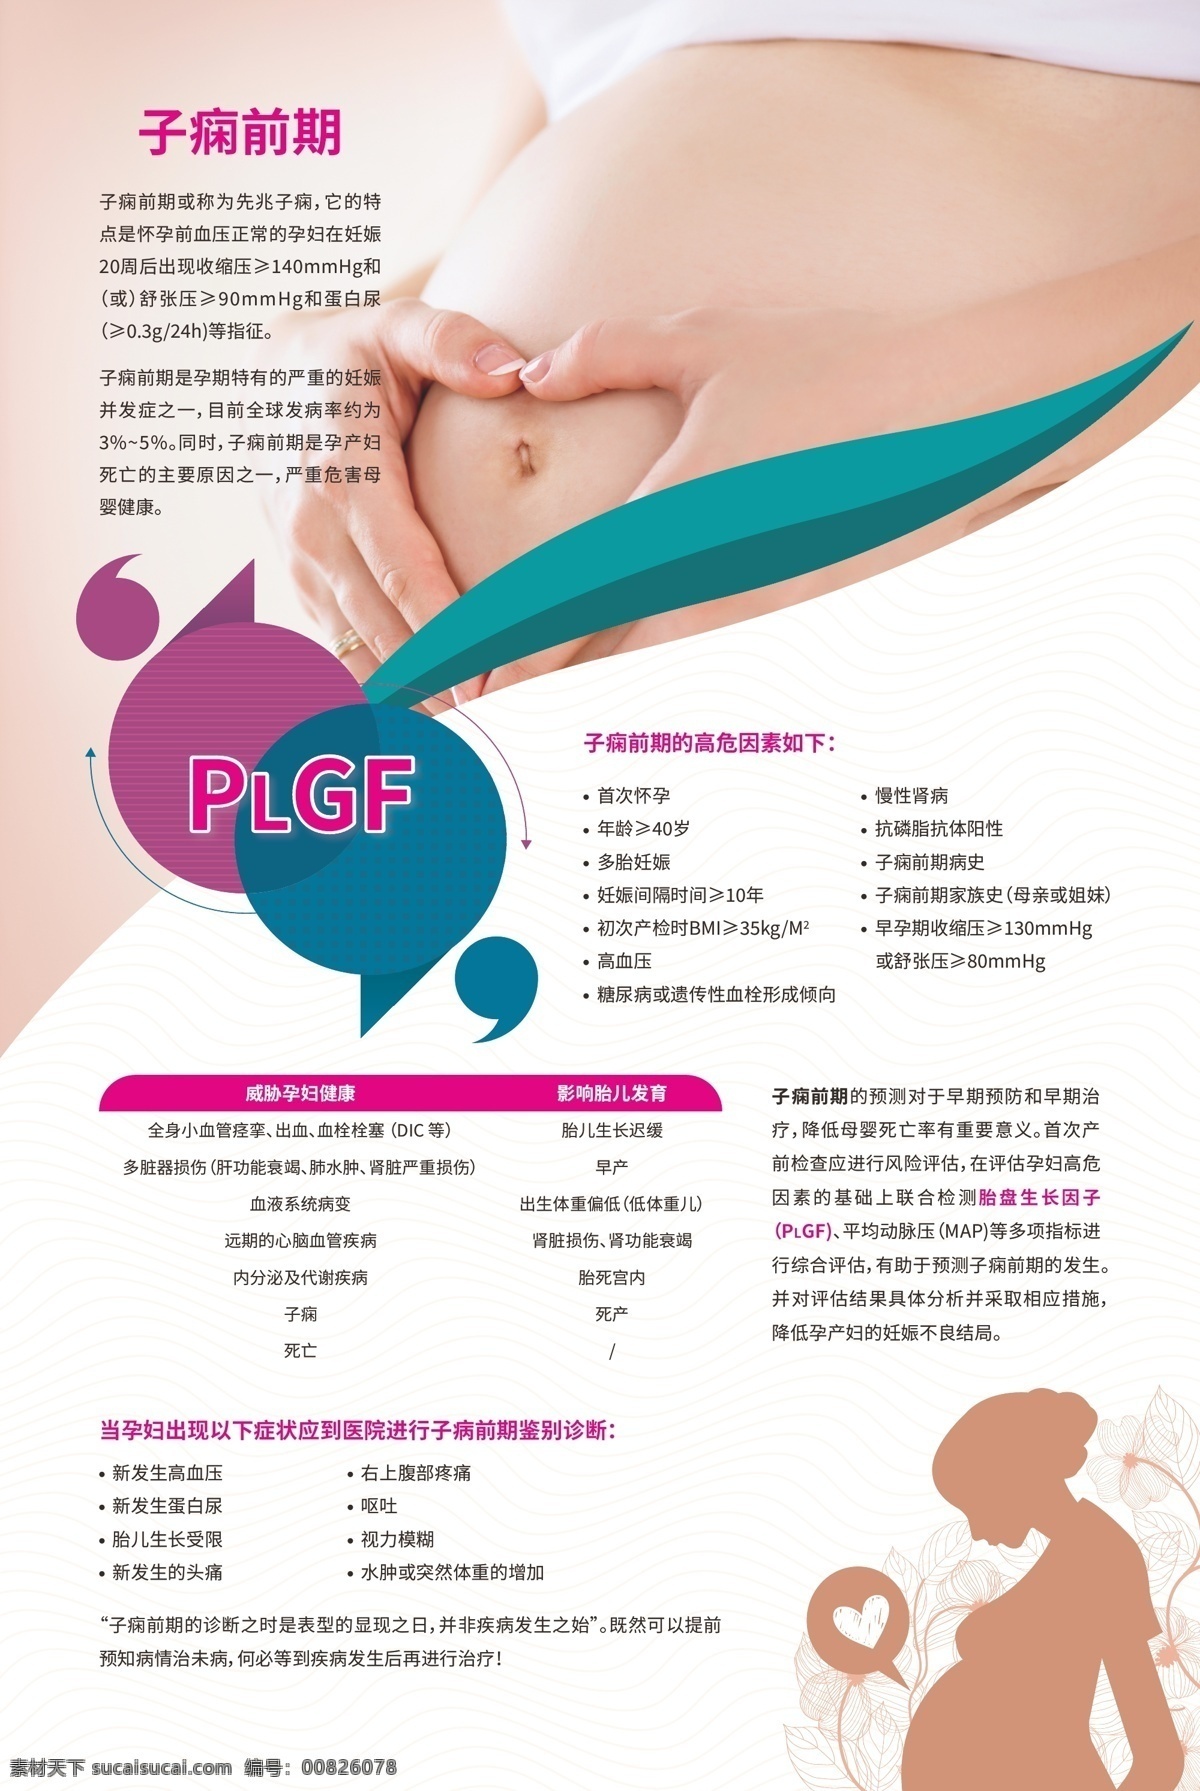 排版设计 孕妇 医疗 子痫介绍 plgf 逗号 引号 胎盘生长因子